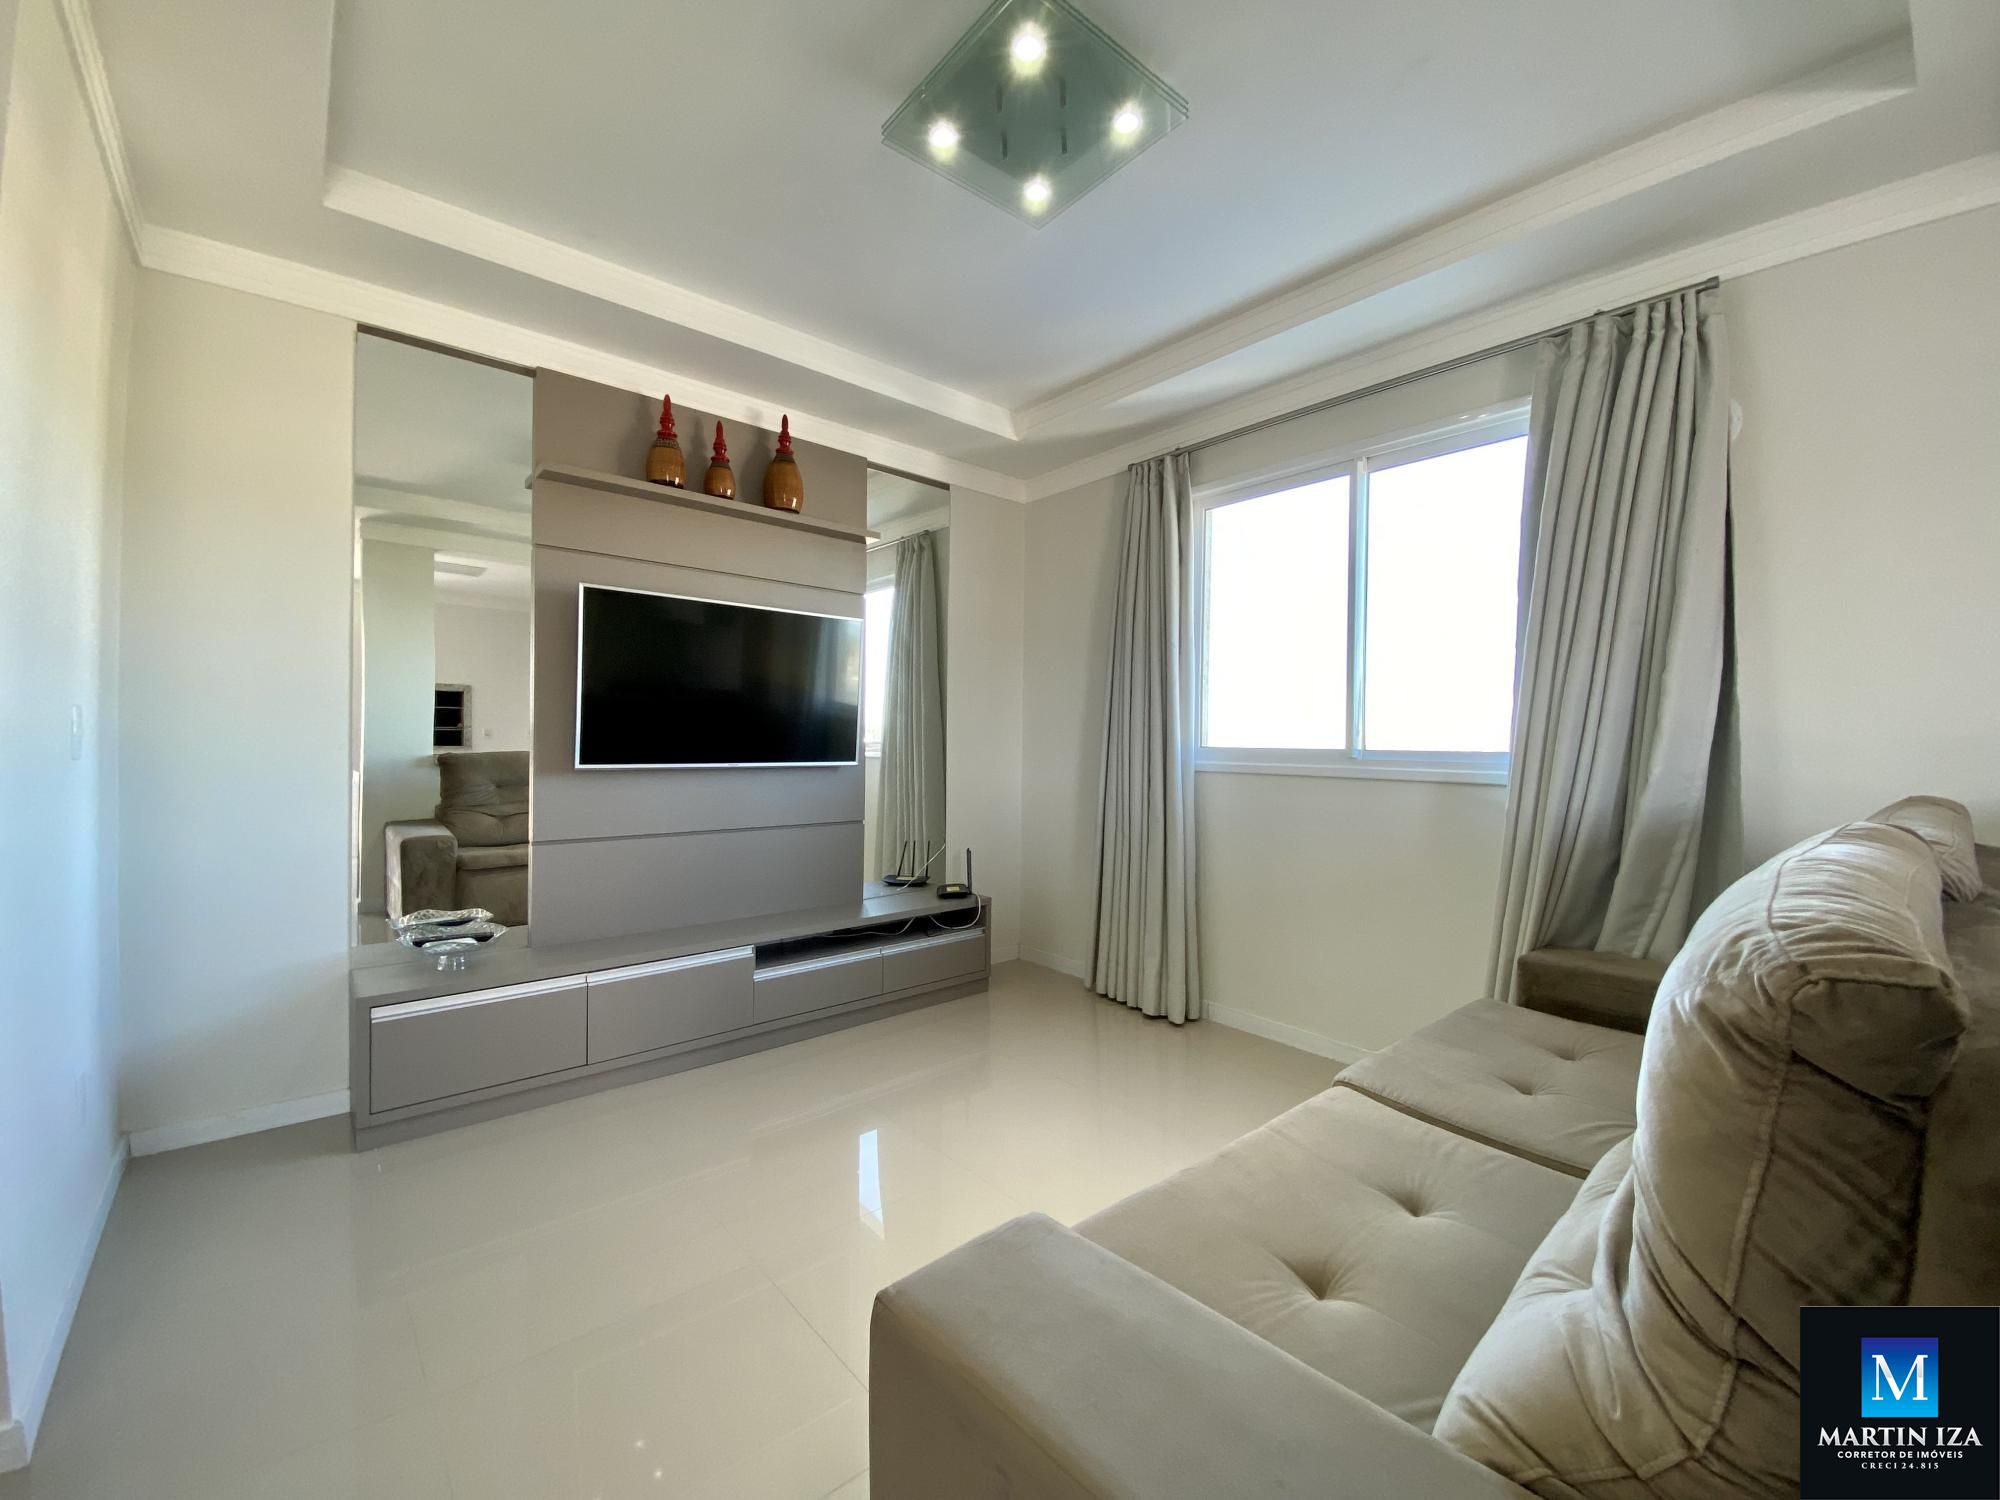 Cobertura com 3 Dormitórios à venda, 160 m² por R$ 1.600.000,00